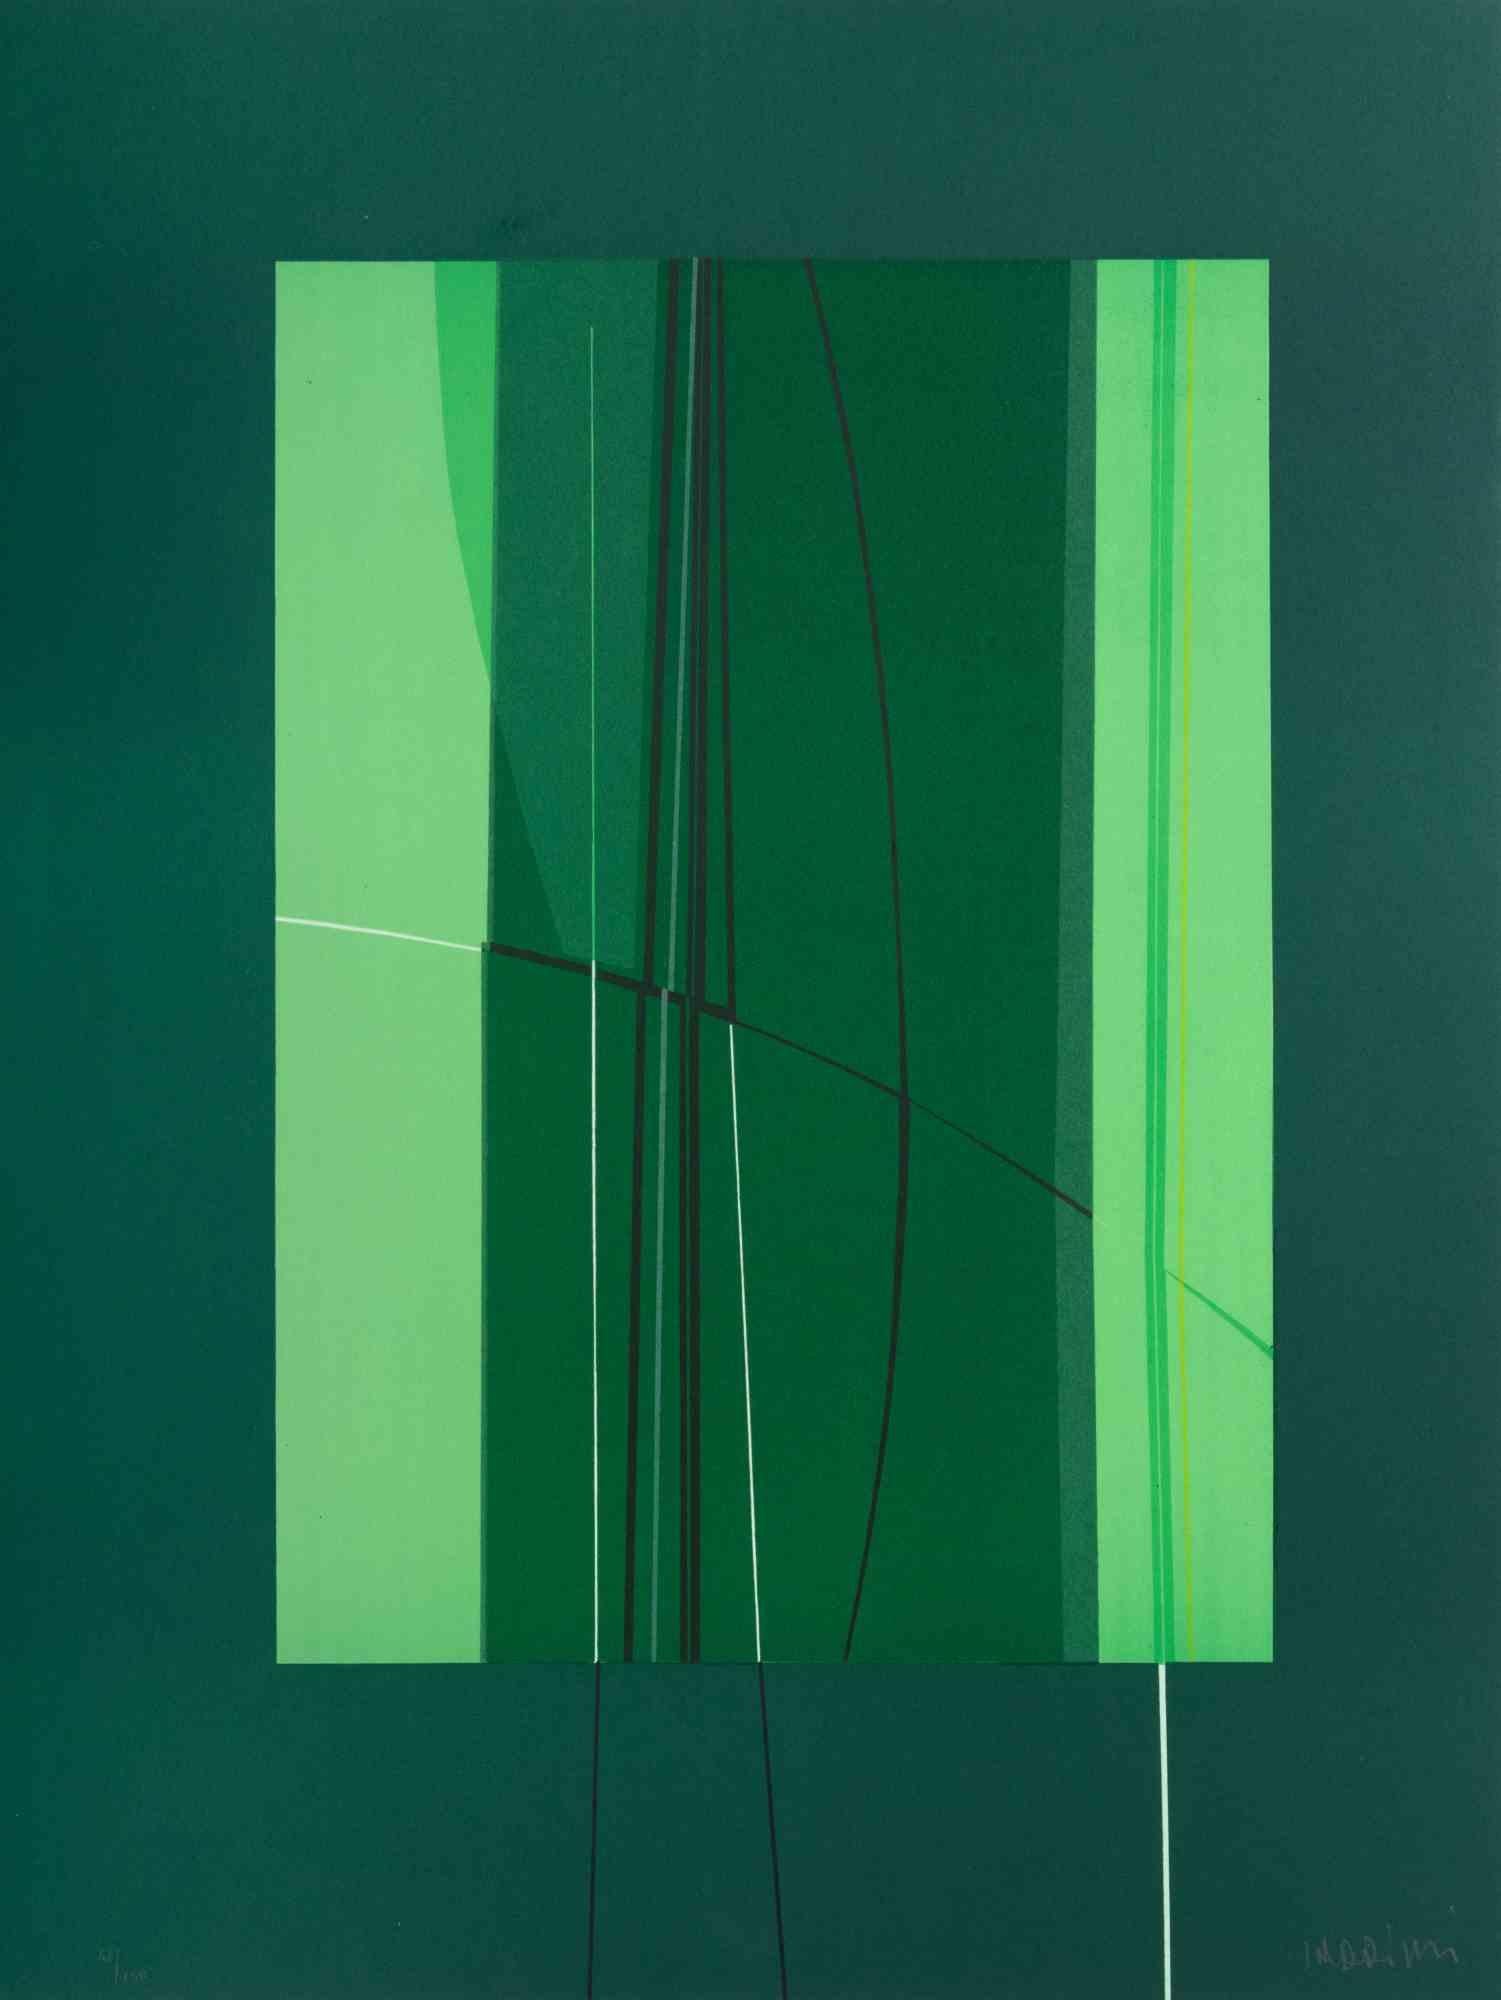 Green ist ein zeitgenössisches Kunstwerk von Lorenzo Indrimi aus den 1970er Jahren.

Gemischtfarbige Lithographie.

Am unteren Rand handsigniert und datiert.

Auflage von 110/150. 